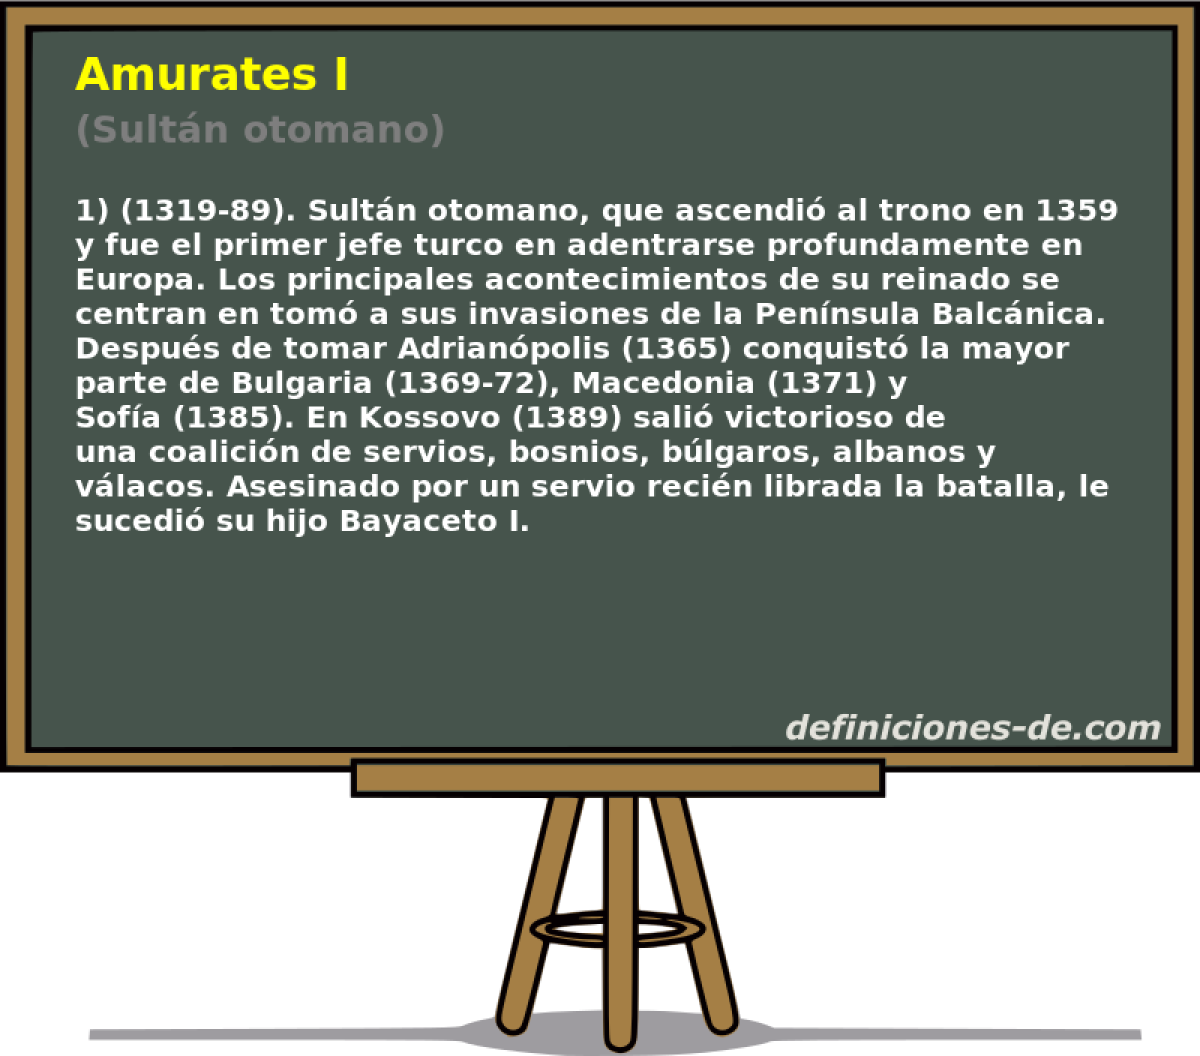 Amurates I (Sultn otomano)